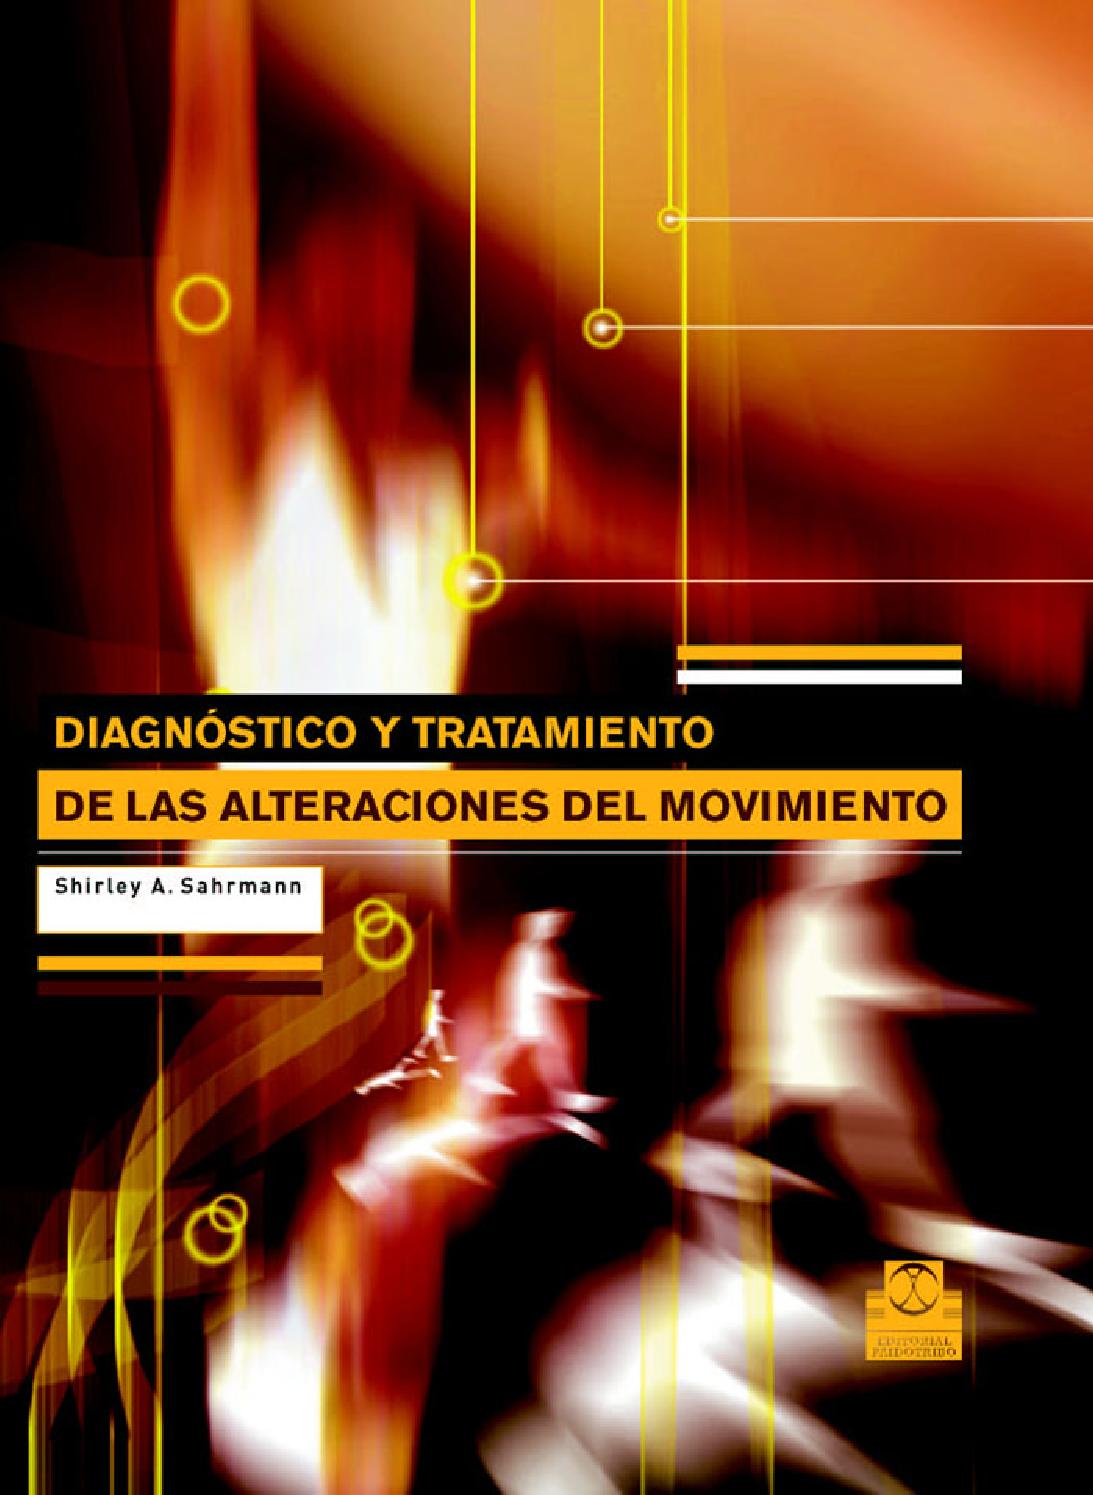 Diagnostico y tratamiento alteraciones del movimiento (Sahrmann)